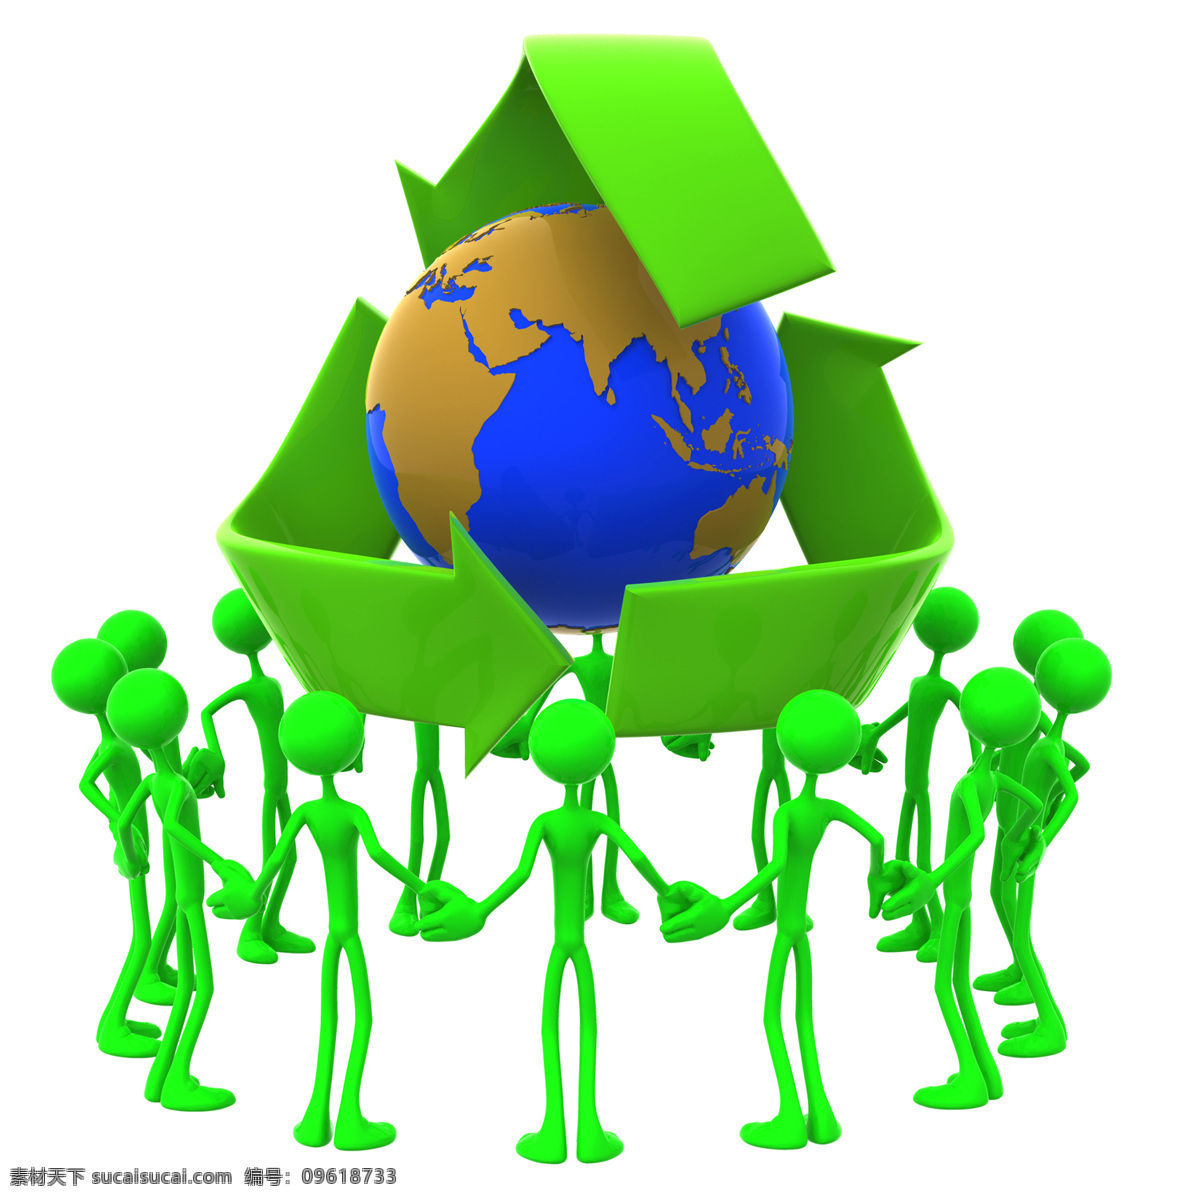 环保 主题 3d 小人 3d小人 环保主题 绿色环保 地球保护 回收标 节能环保 其他人物 人物图片